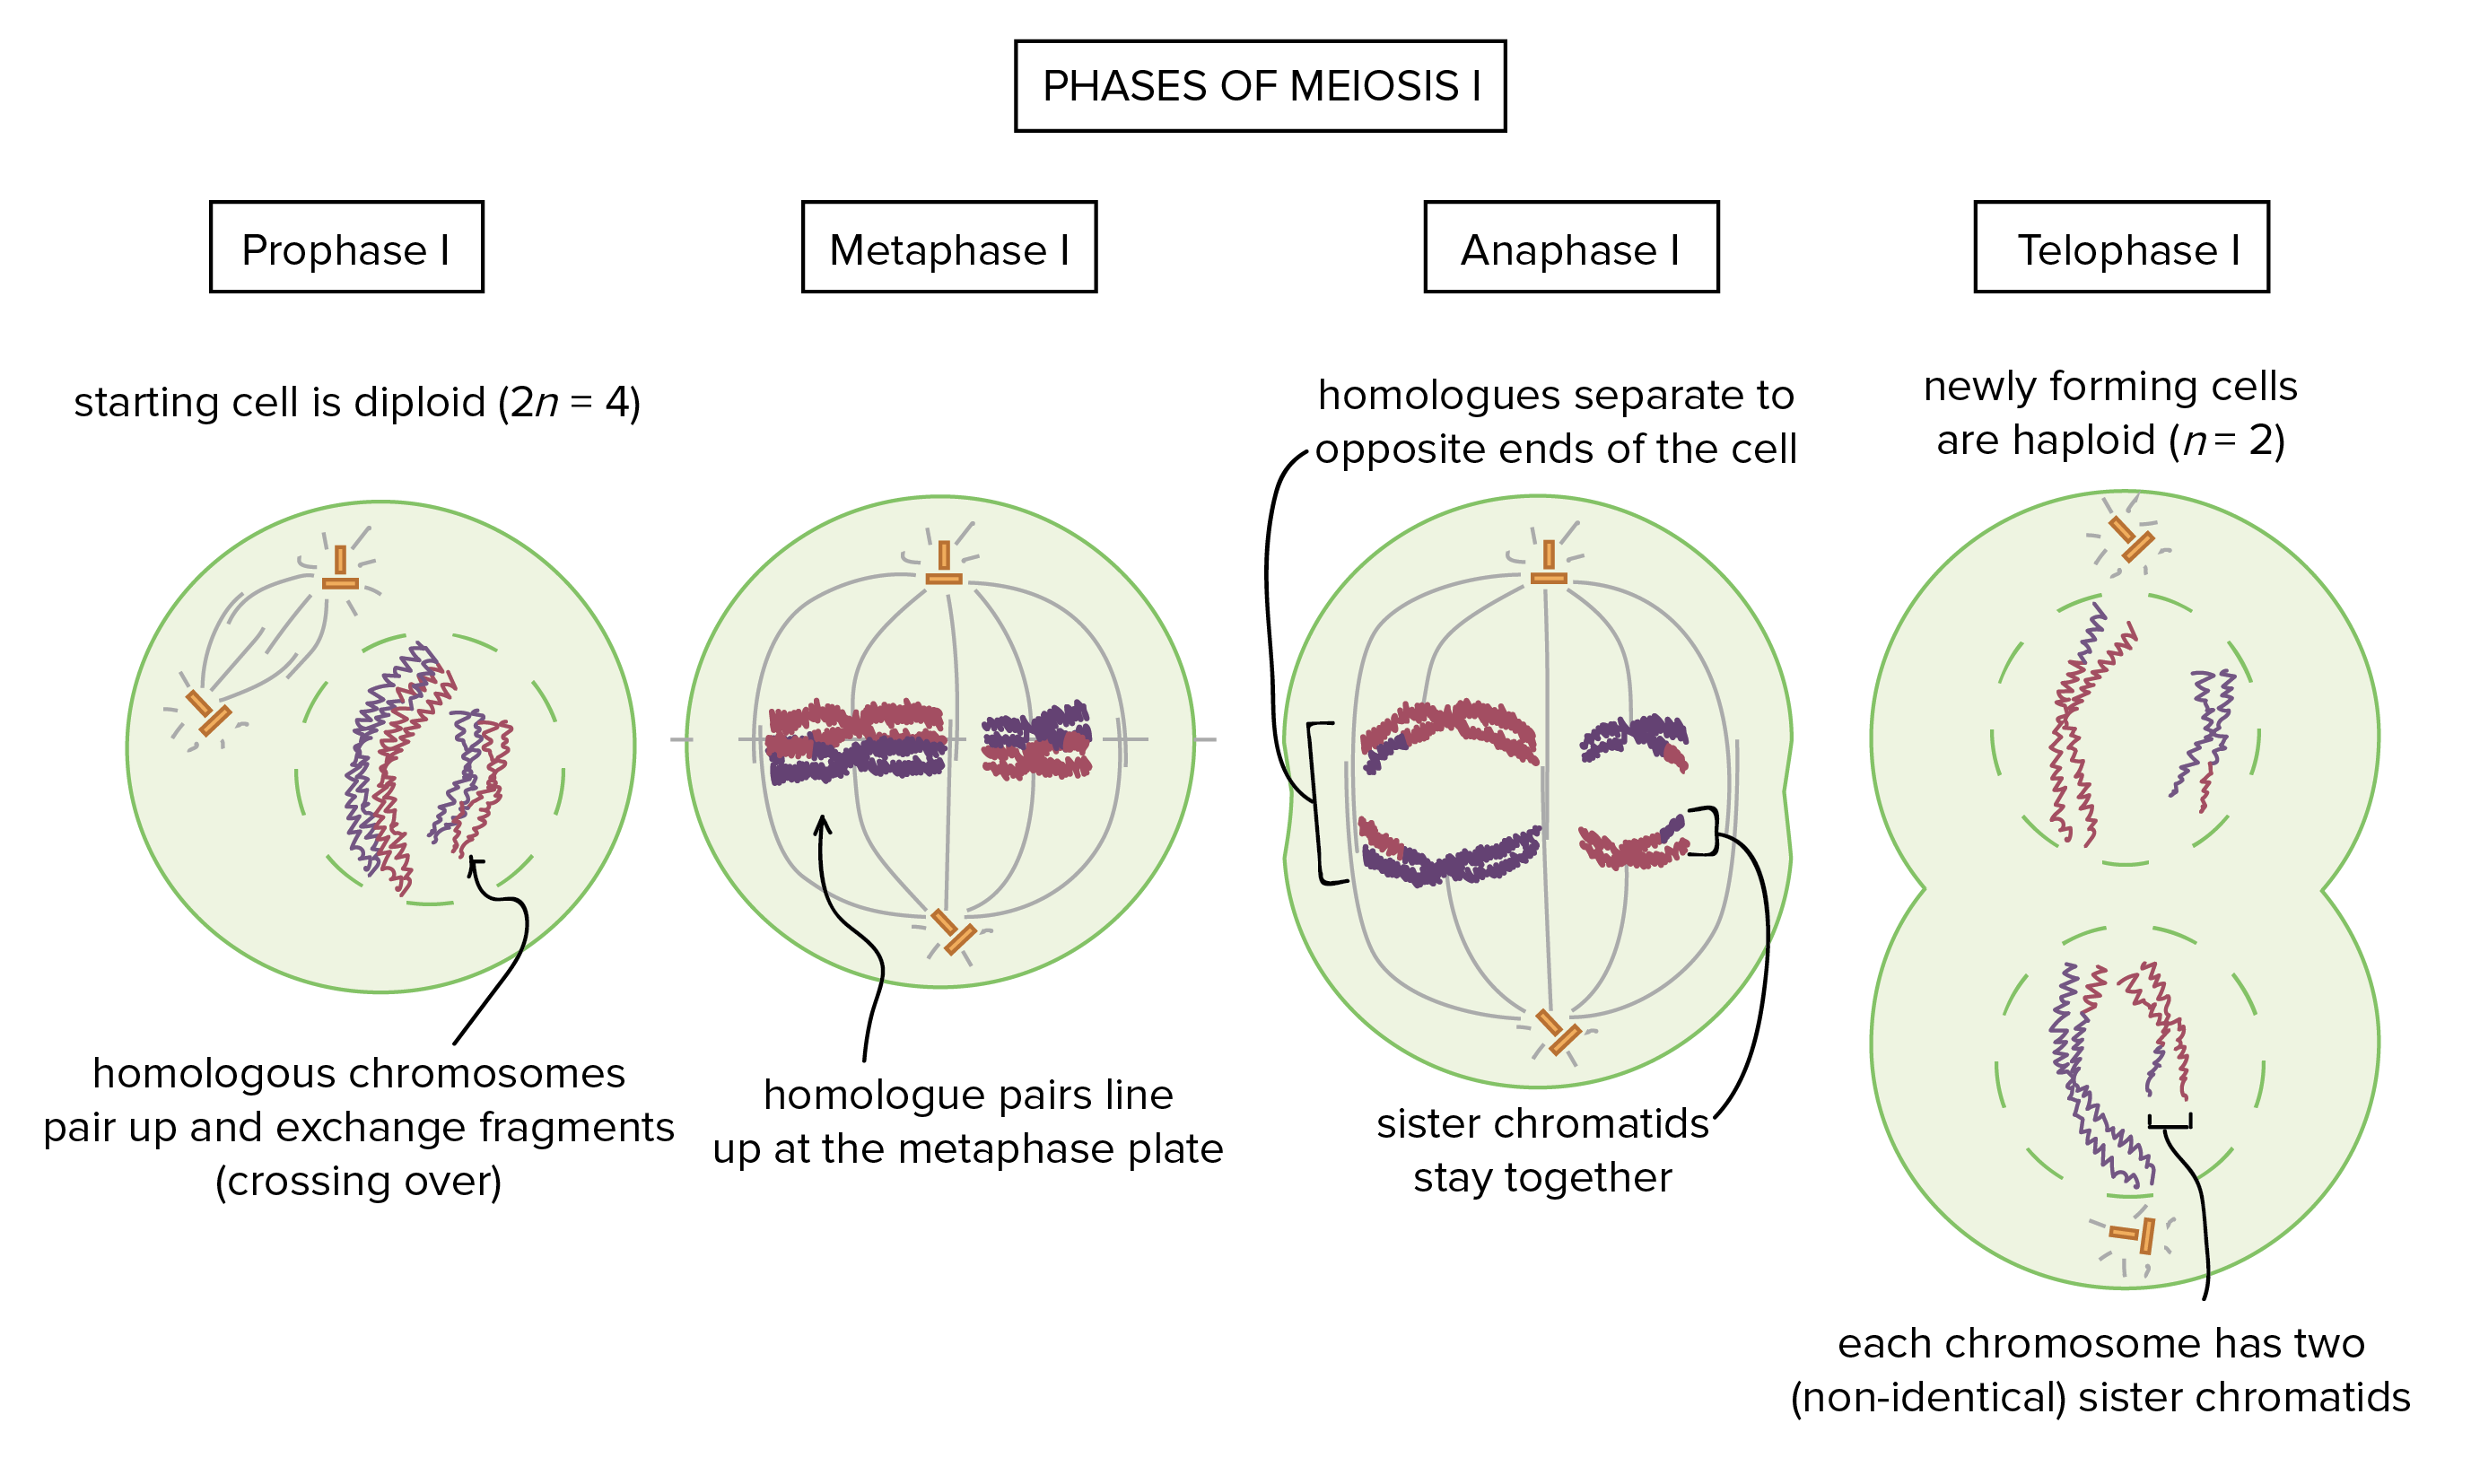 As fases da meiose I.

Prófase I: a célula inicial é diploide (2n = 4). Os cromossomos homólogos formam pares e trocam fragmentos no processo de crossing over.

Metáfase I: os pares homólogos se alinham na placa metafásica.

Anáfase I: os homólogos se separam e vão para extremidades opostas da célula. As cromátides-irmãs permanecem juntas.

Telófase I: as células recém-formadas são haploides, n=2. Cada cromossomo ainda tem duas cromátides-irmãs, mas as cromátides de cada cromossomo não são mais idênticas entre si.